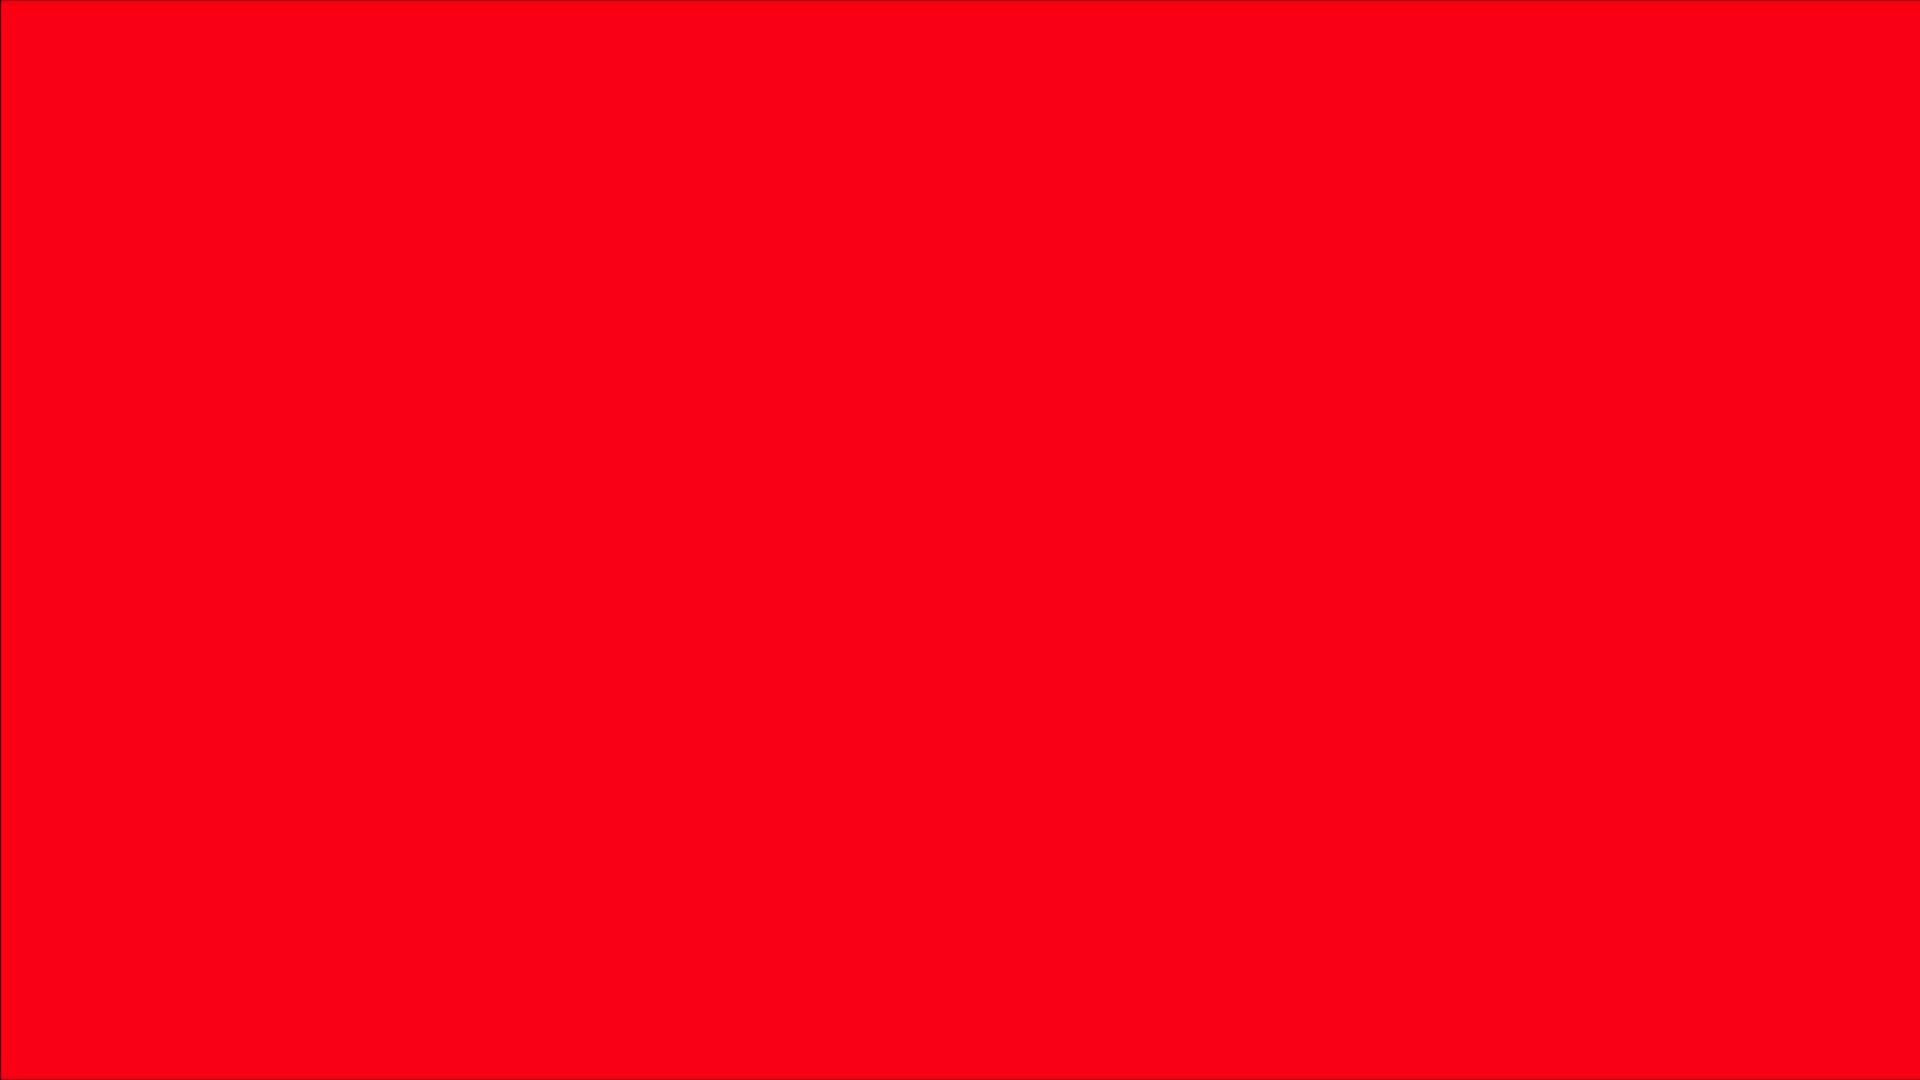 Red Screen: Nếu bạn đang tìm kiếm các hình ảnh hoặc video với hậu trường màu đỏ đầy bí ẩn, hãy cùng khám phá bộ sưu tập của chúng tôi. Với những tác phẩm đầy cảm xúc, chúng tôi hi vọng sẽ đem lại cho bạn những giây phút giải trí thú vị.